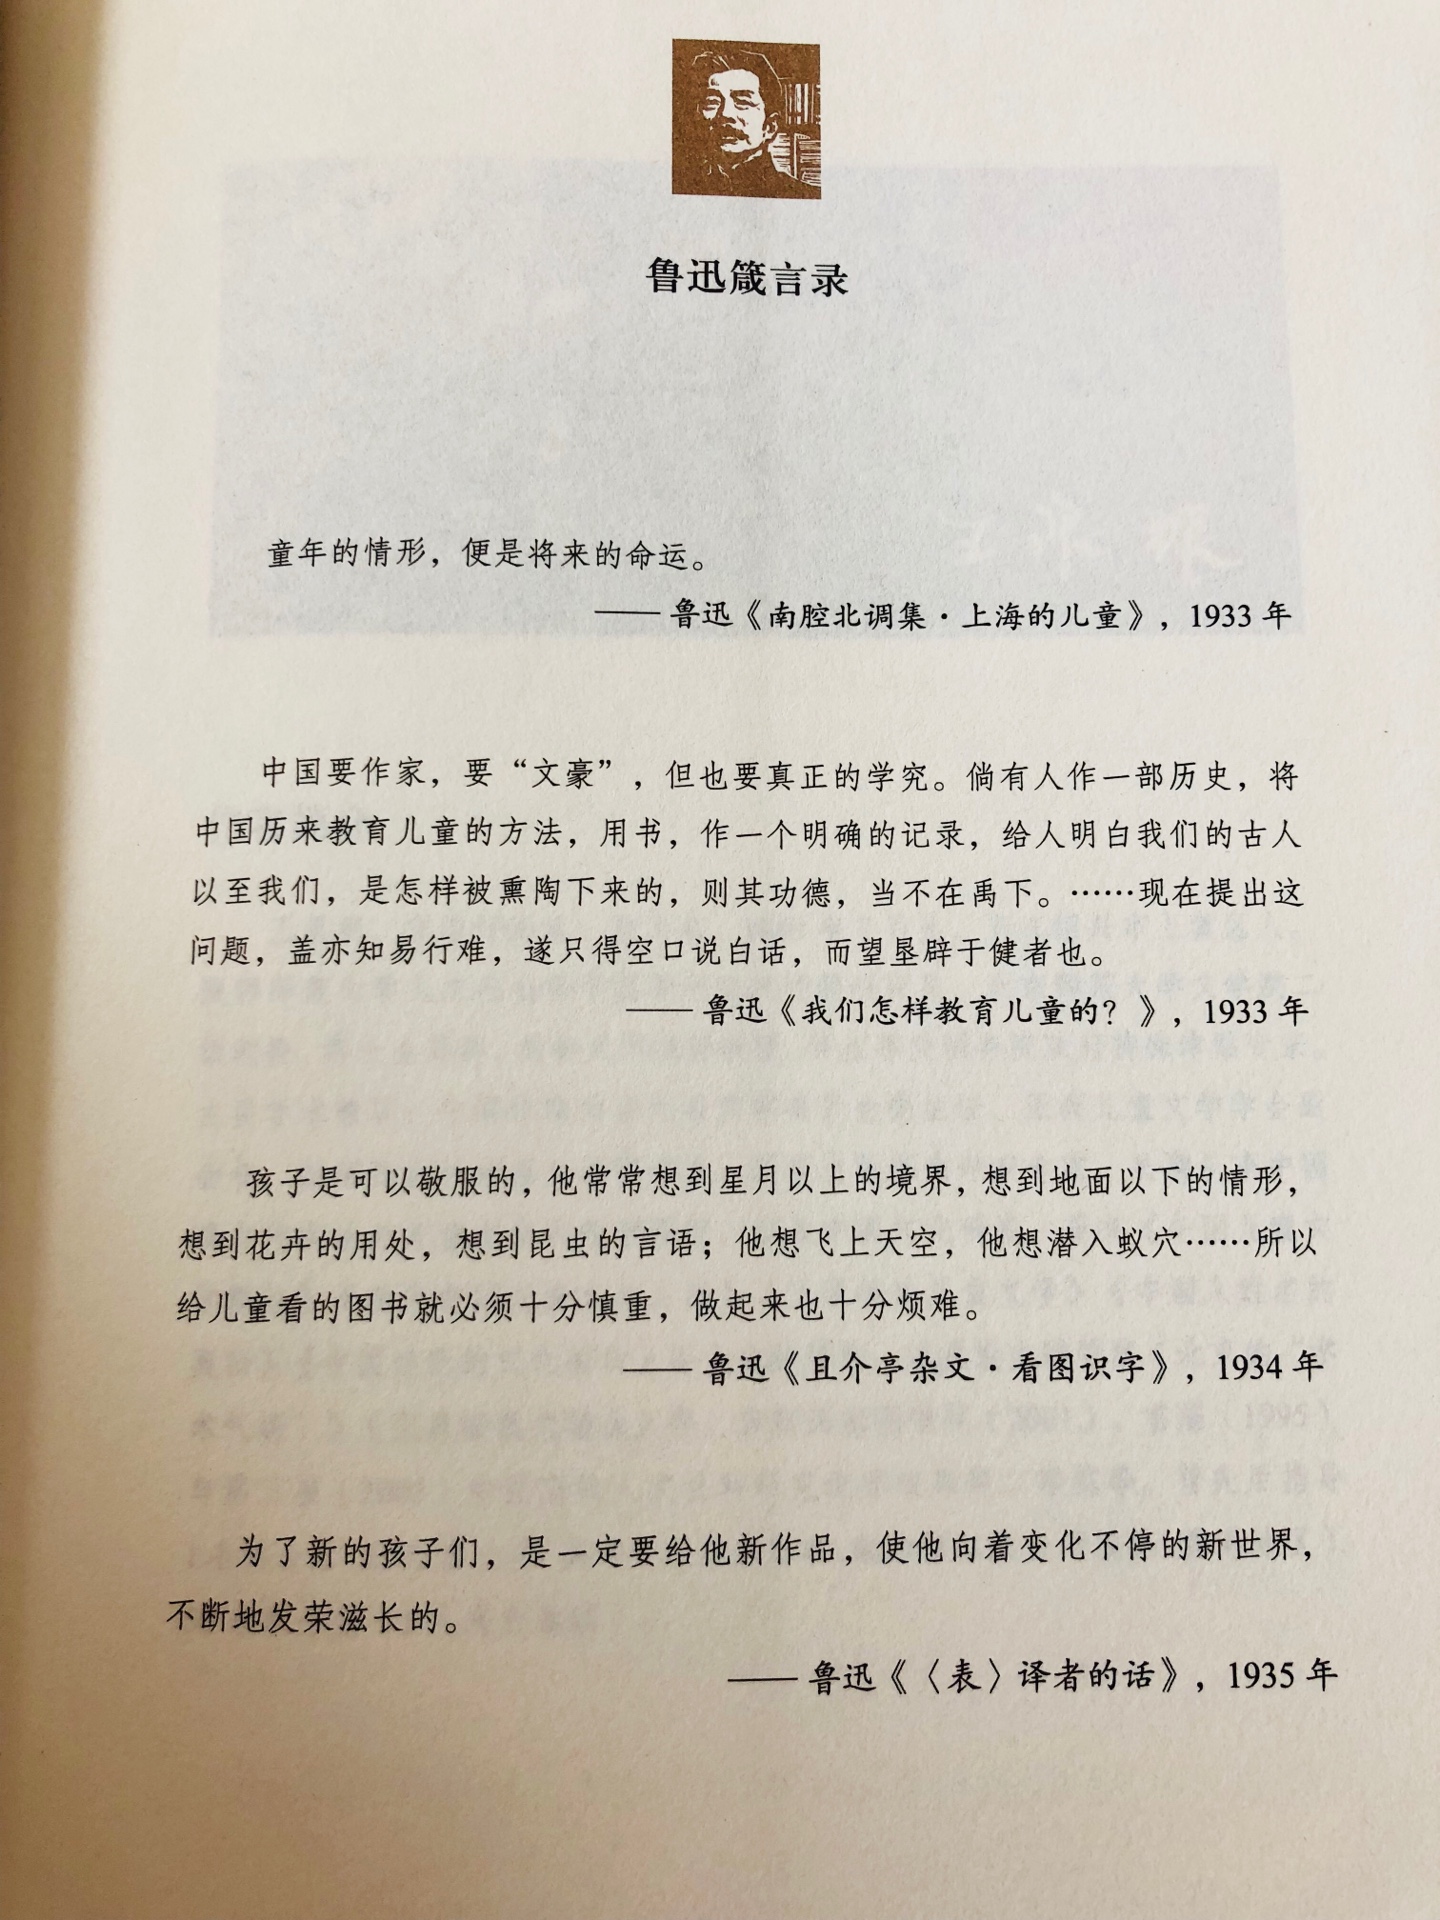 终于找到了一本可以系统地了解中国儿童文学发展的重量级编年史了。好好研究下。